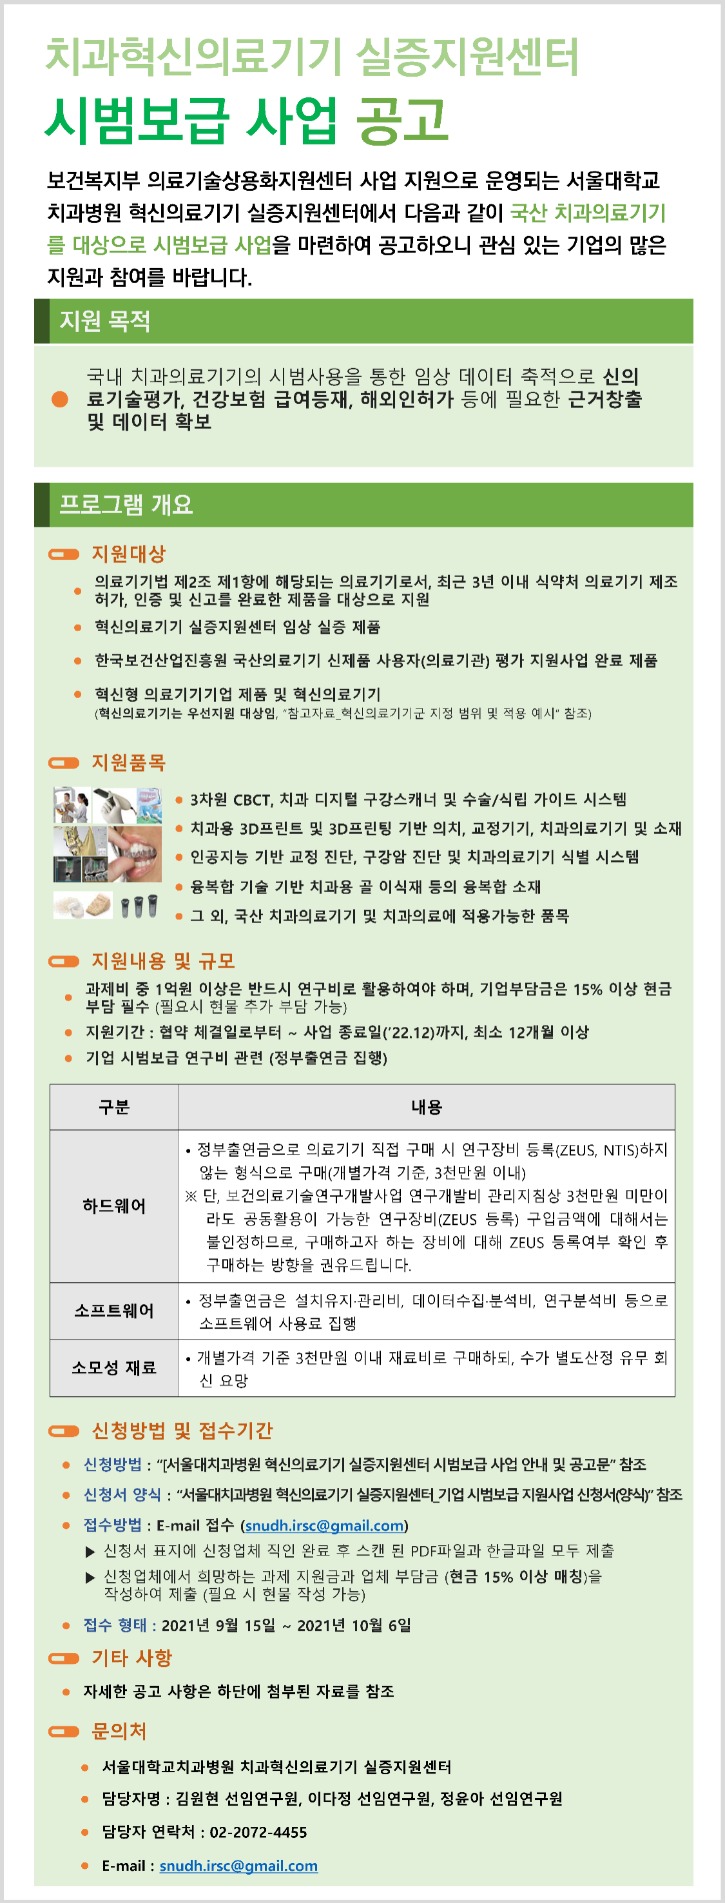 서울대치과병원 혁신센터_시범보급 사업 공고문.jpg